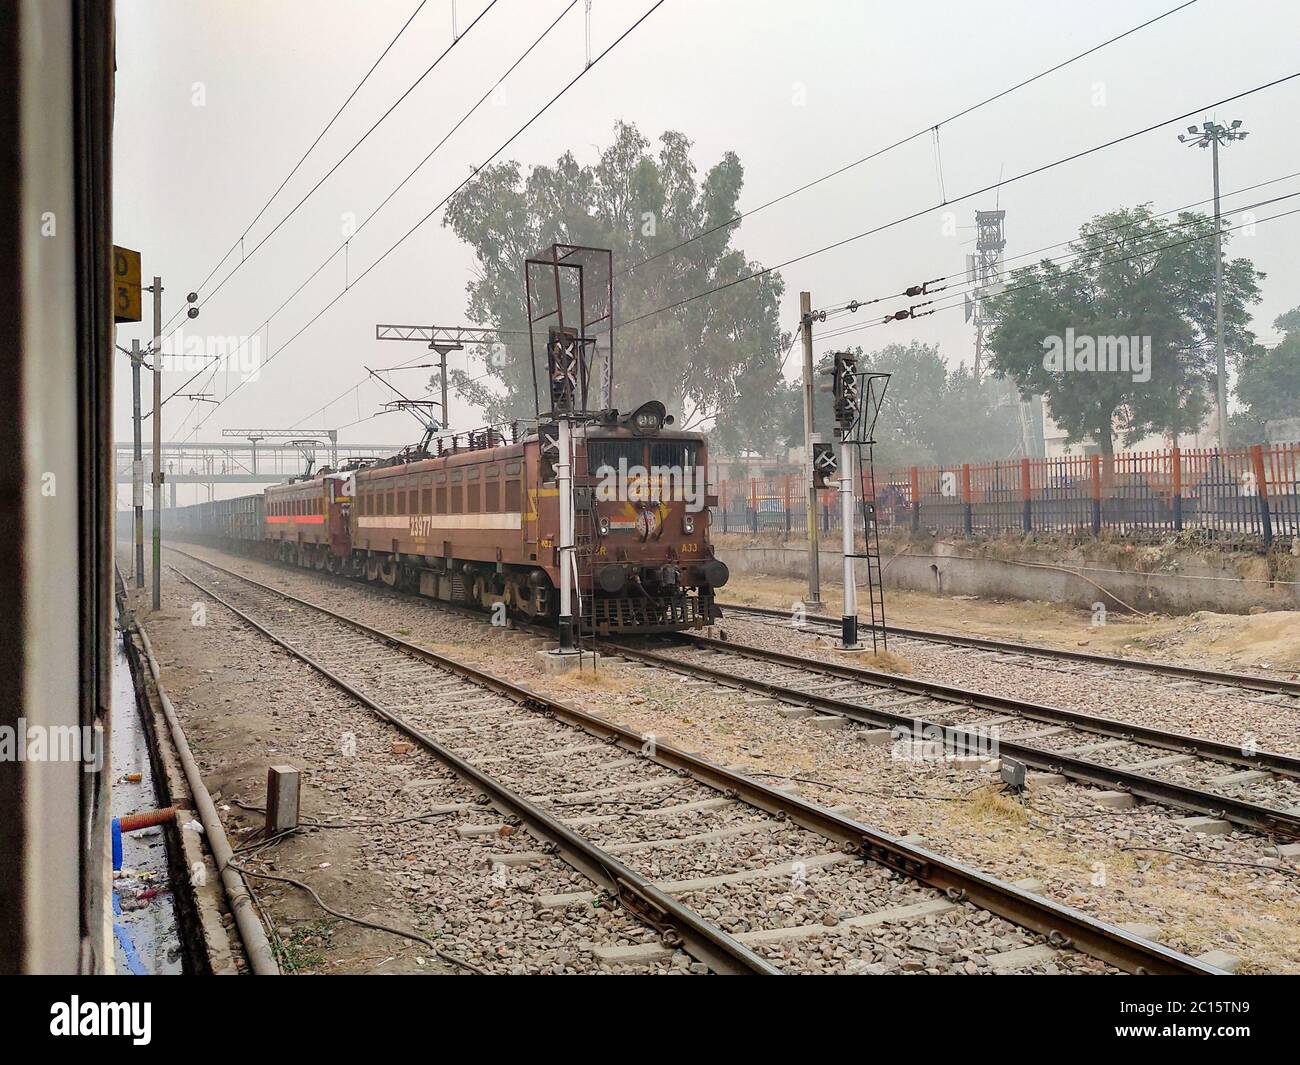 Redaktionell. Datiert-18. April 2020, Lage - Neu Delhi.ein indischer freght Zug. Eine Voransicht von vor der Zugtür. Stockfoto